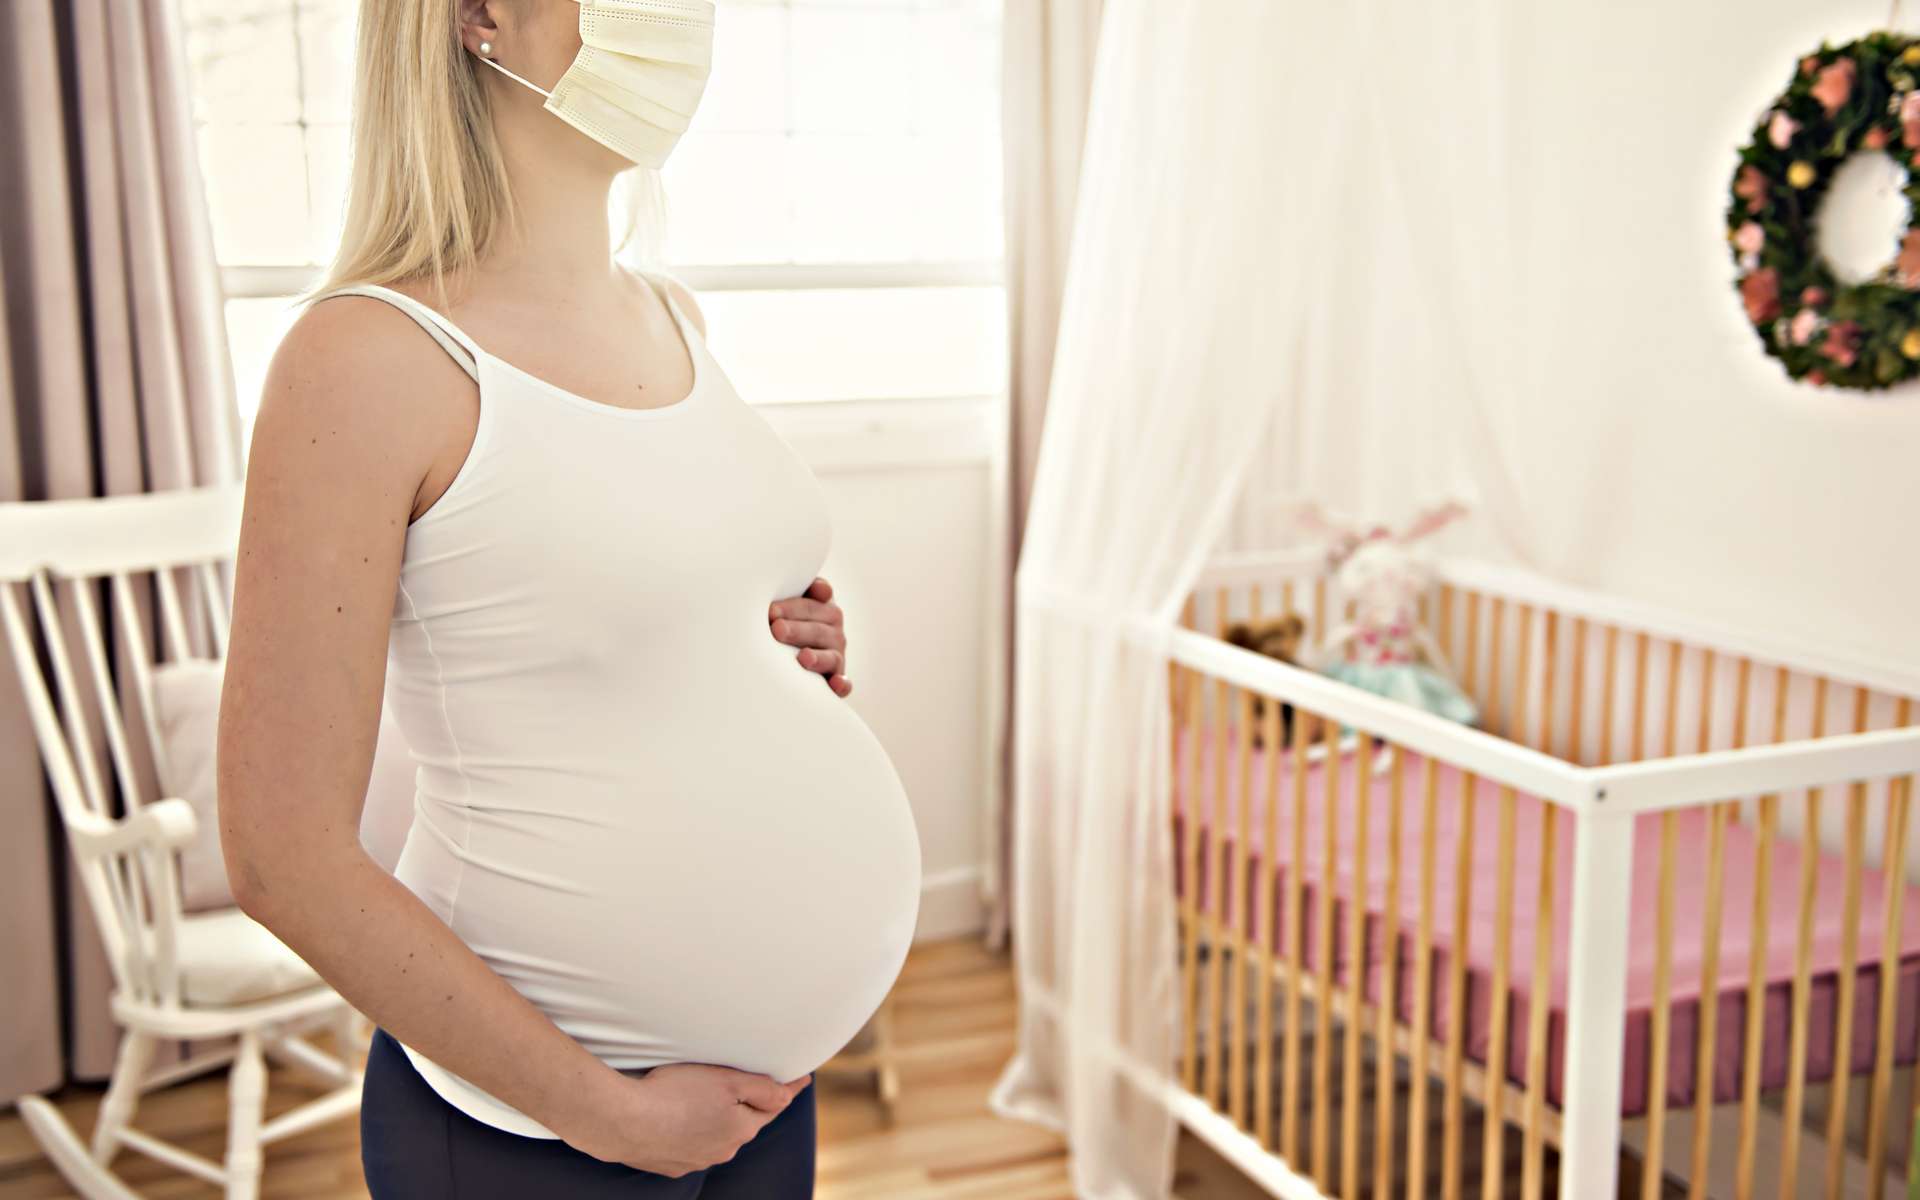 Le coronavirus provoquerait des lésions sur le placenta des femmes enceintes, sans pour autant contaminer le fœtus. © pololia, Adobe Stock